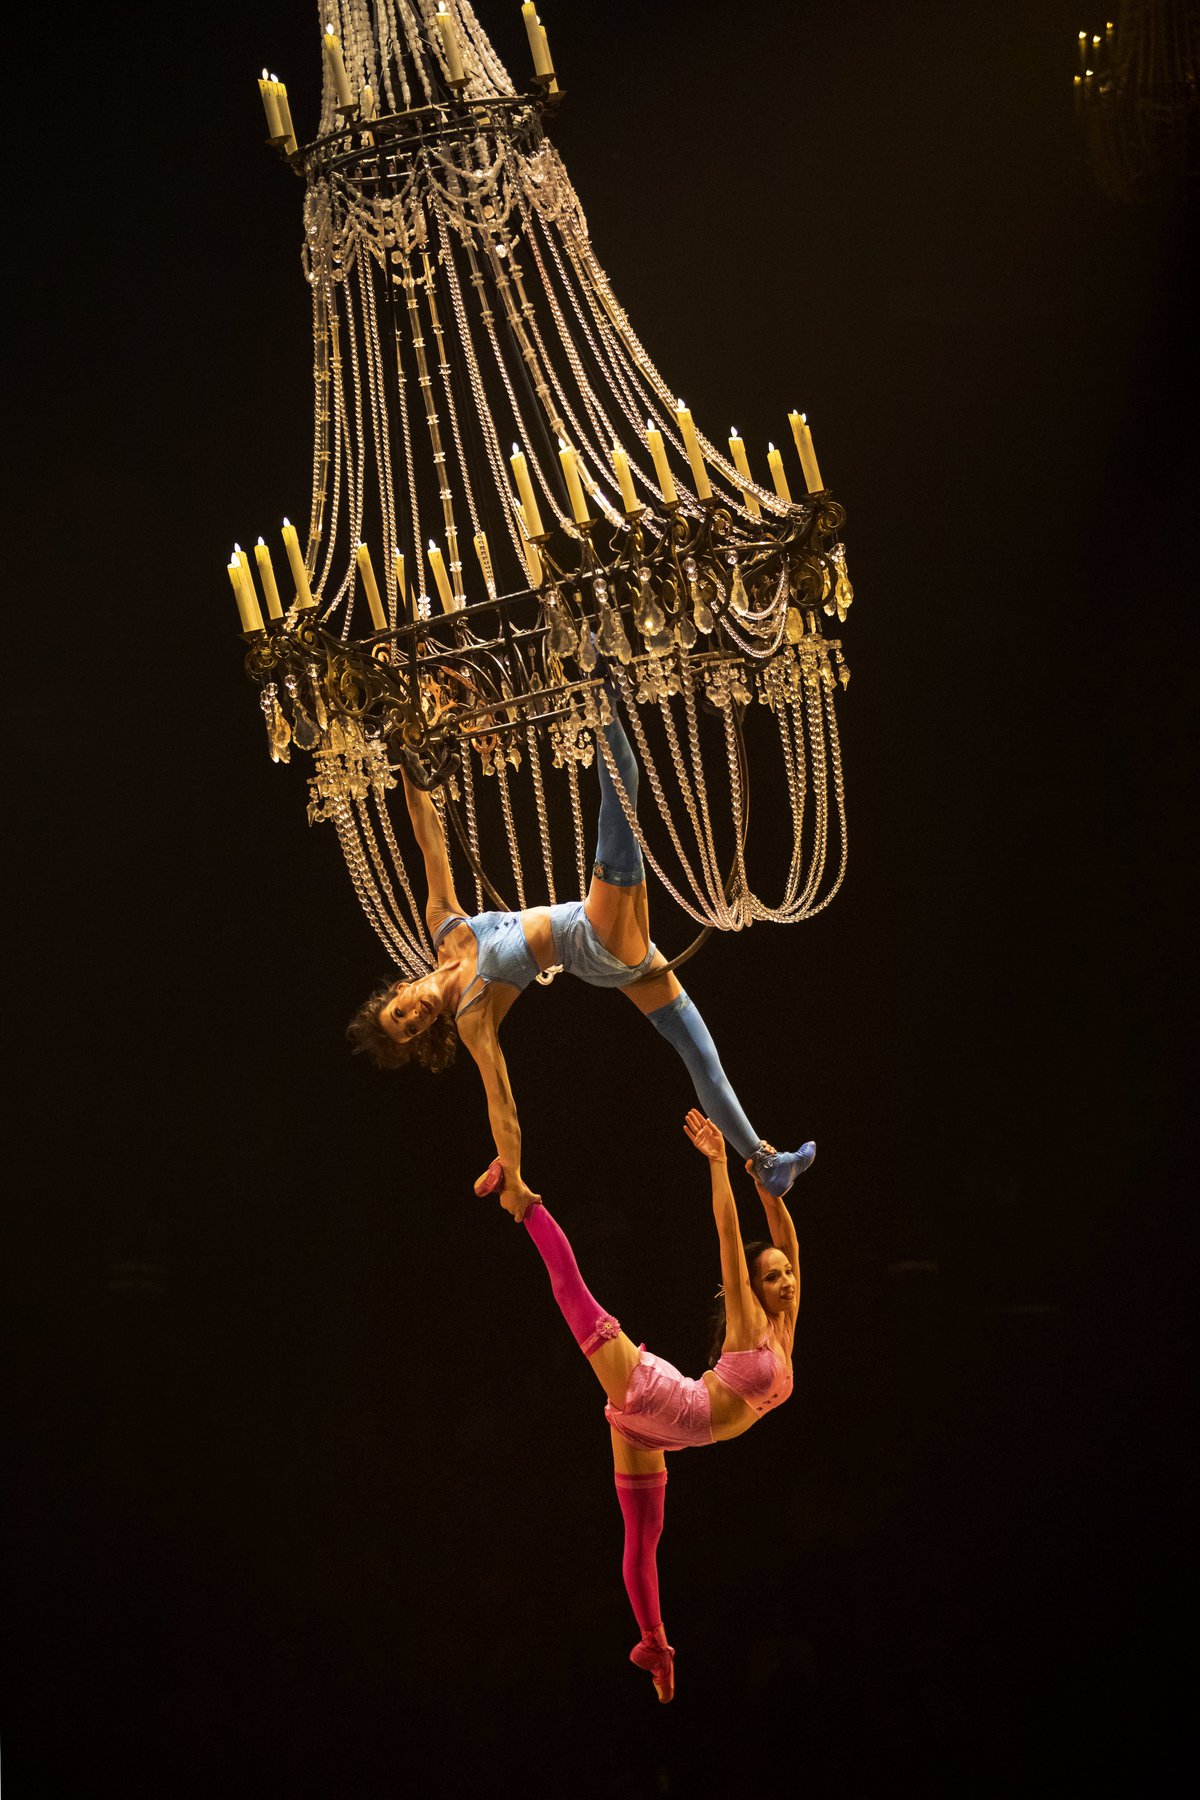 Cirque du Soleil's 'Corteo' coming to the Schottenstein Center